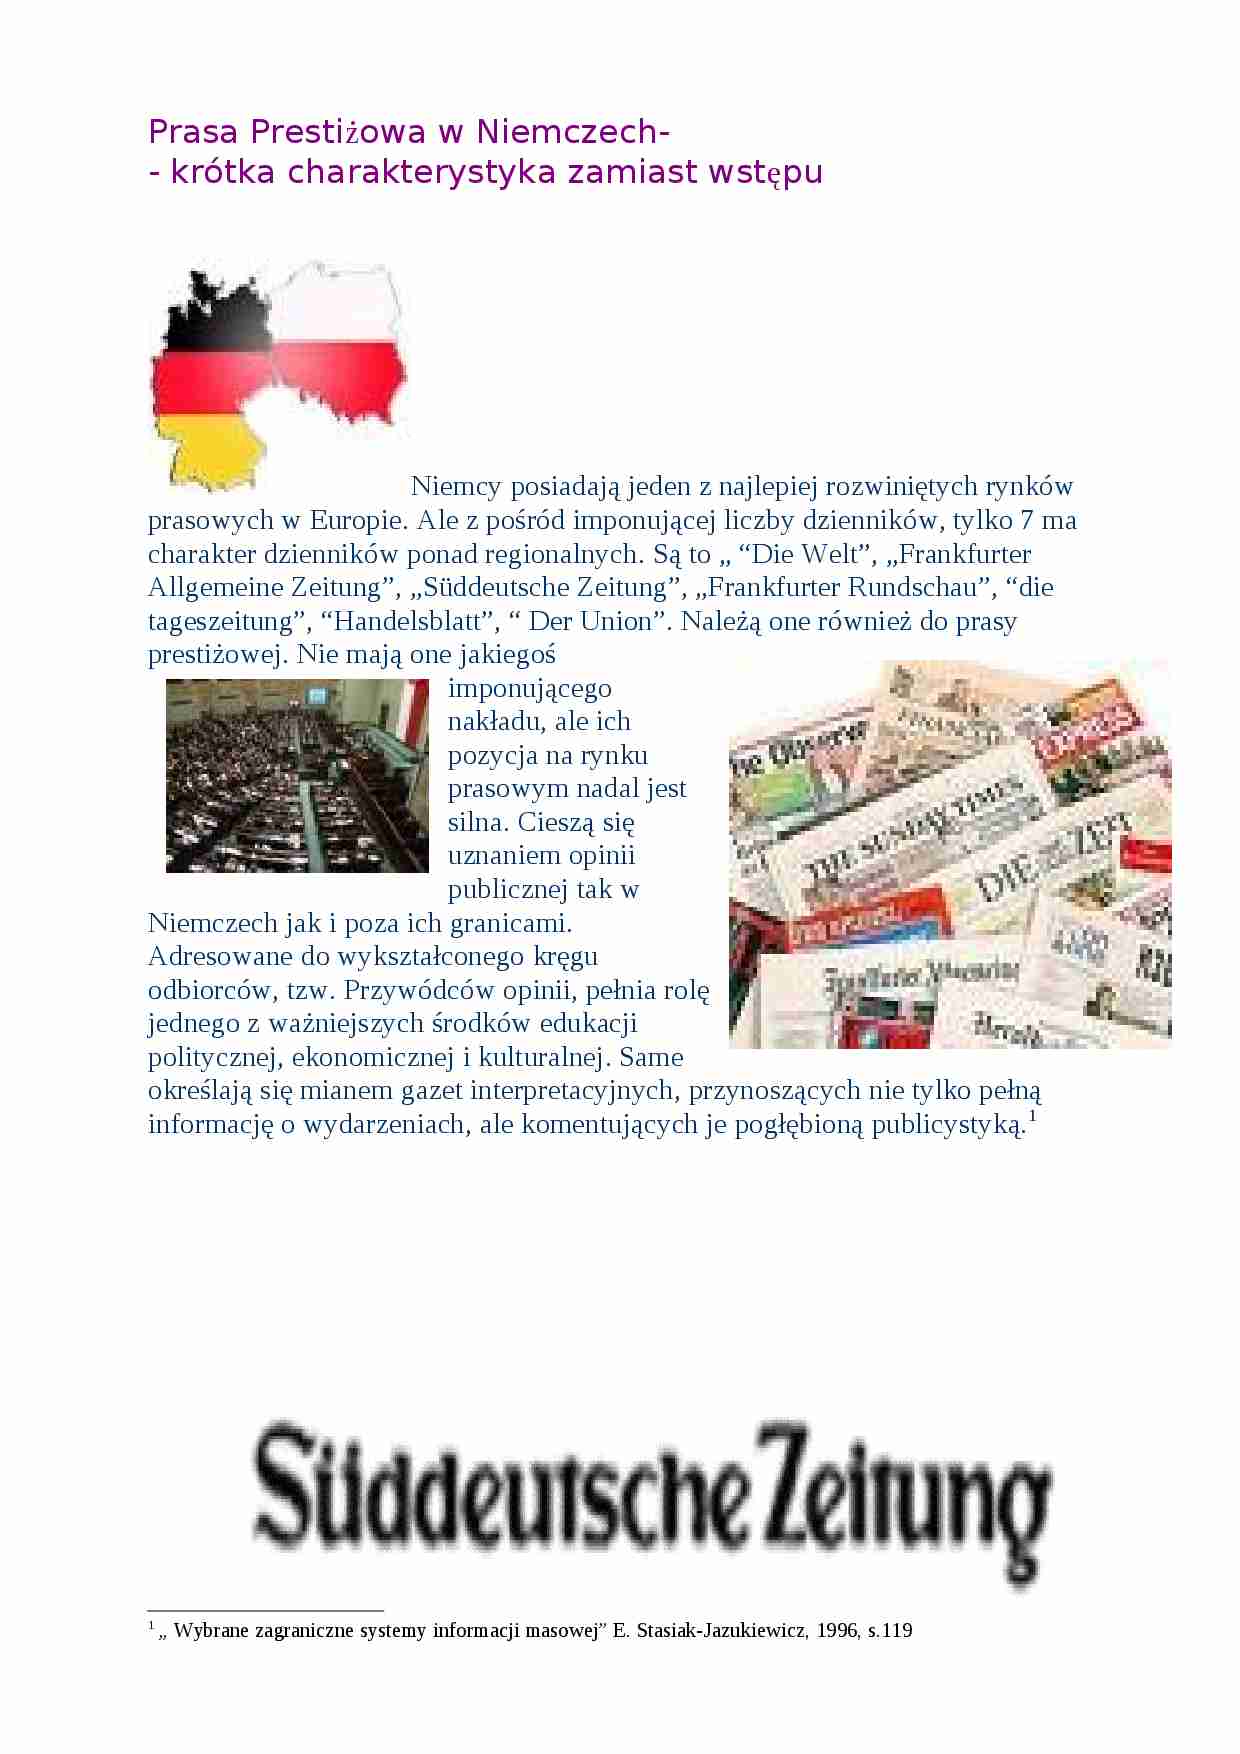 Prasa prestiżowa w Niemczech - strona 1